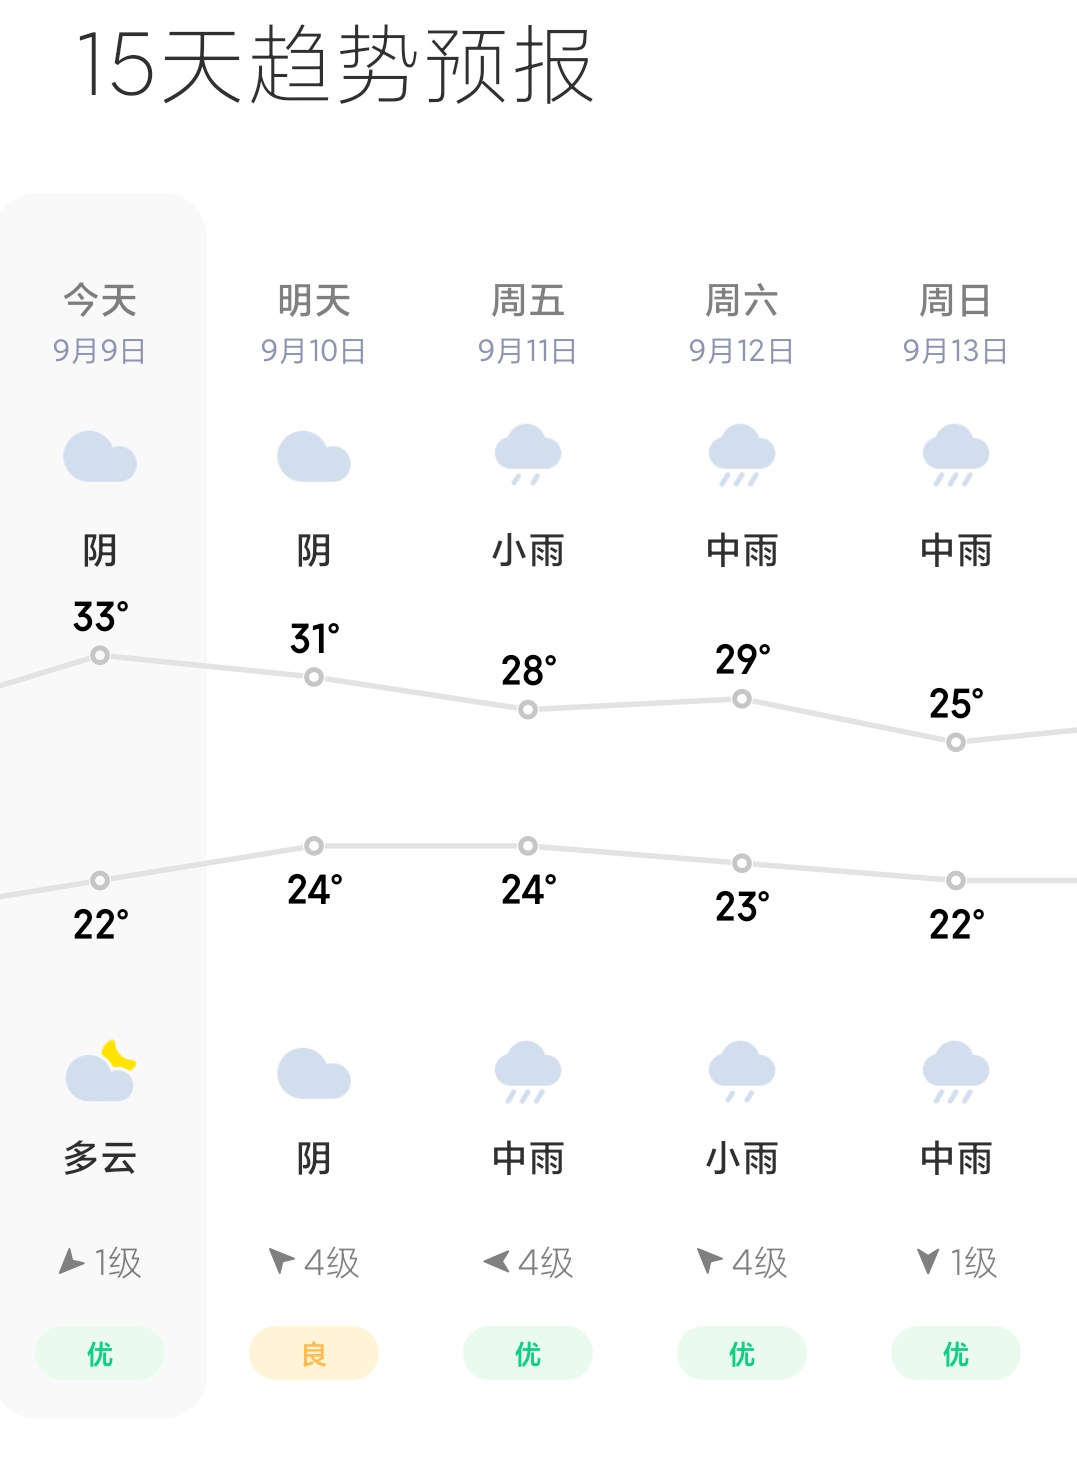 浙江温州天气预报图片